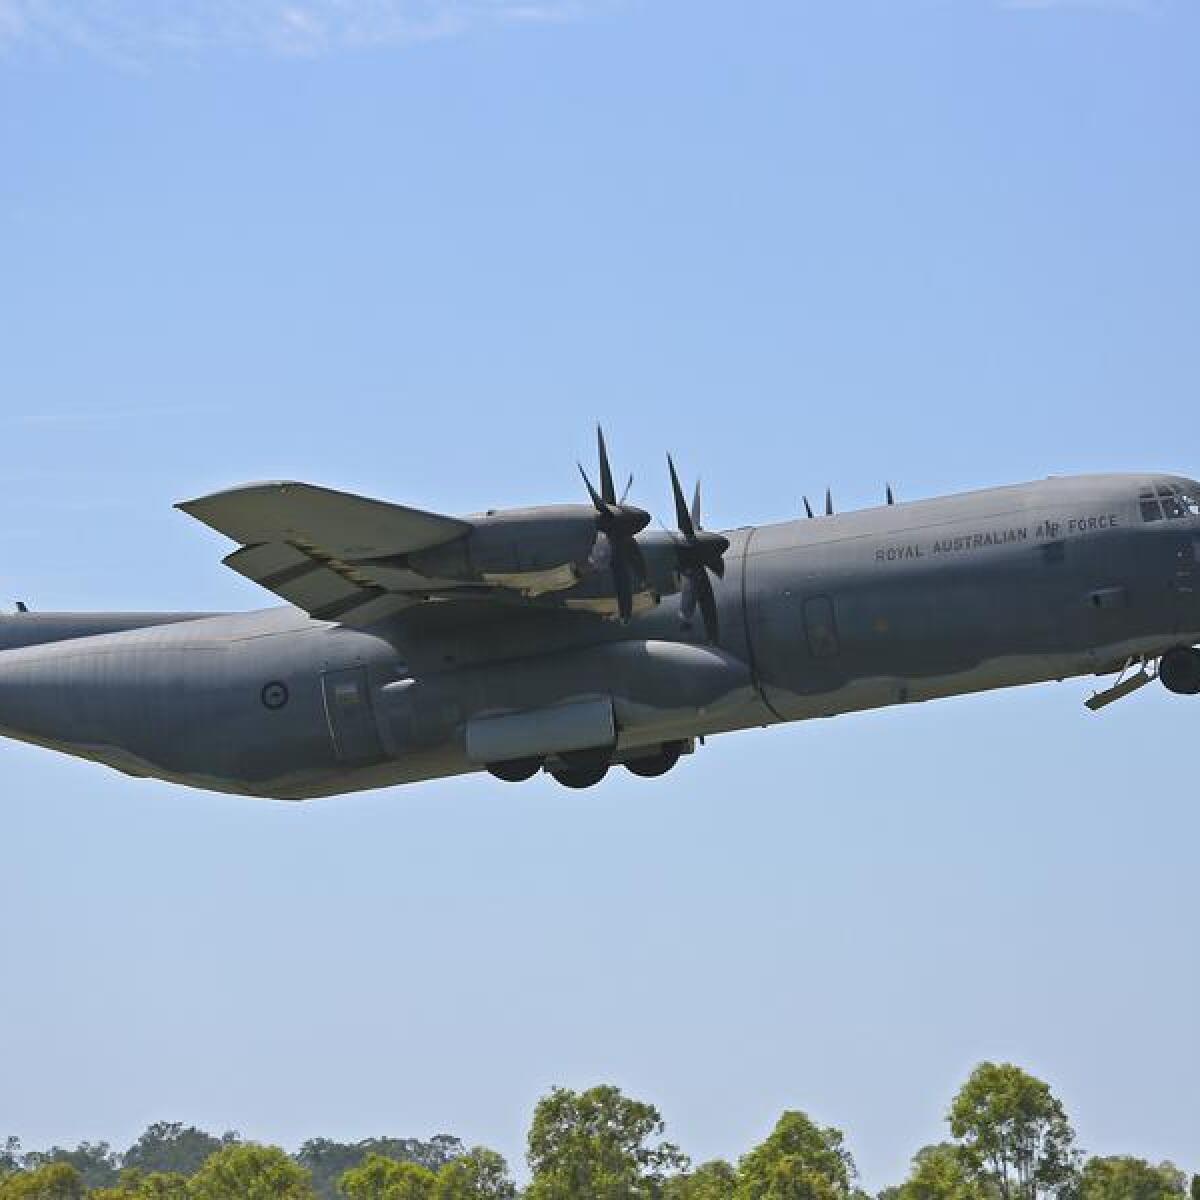 File image of a RAAF C-130 Hercules.